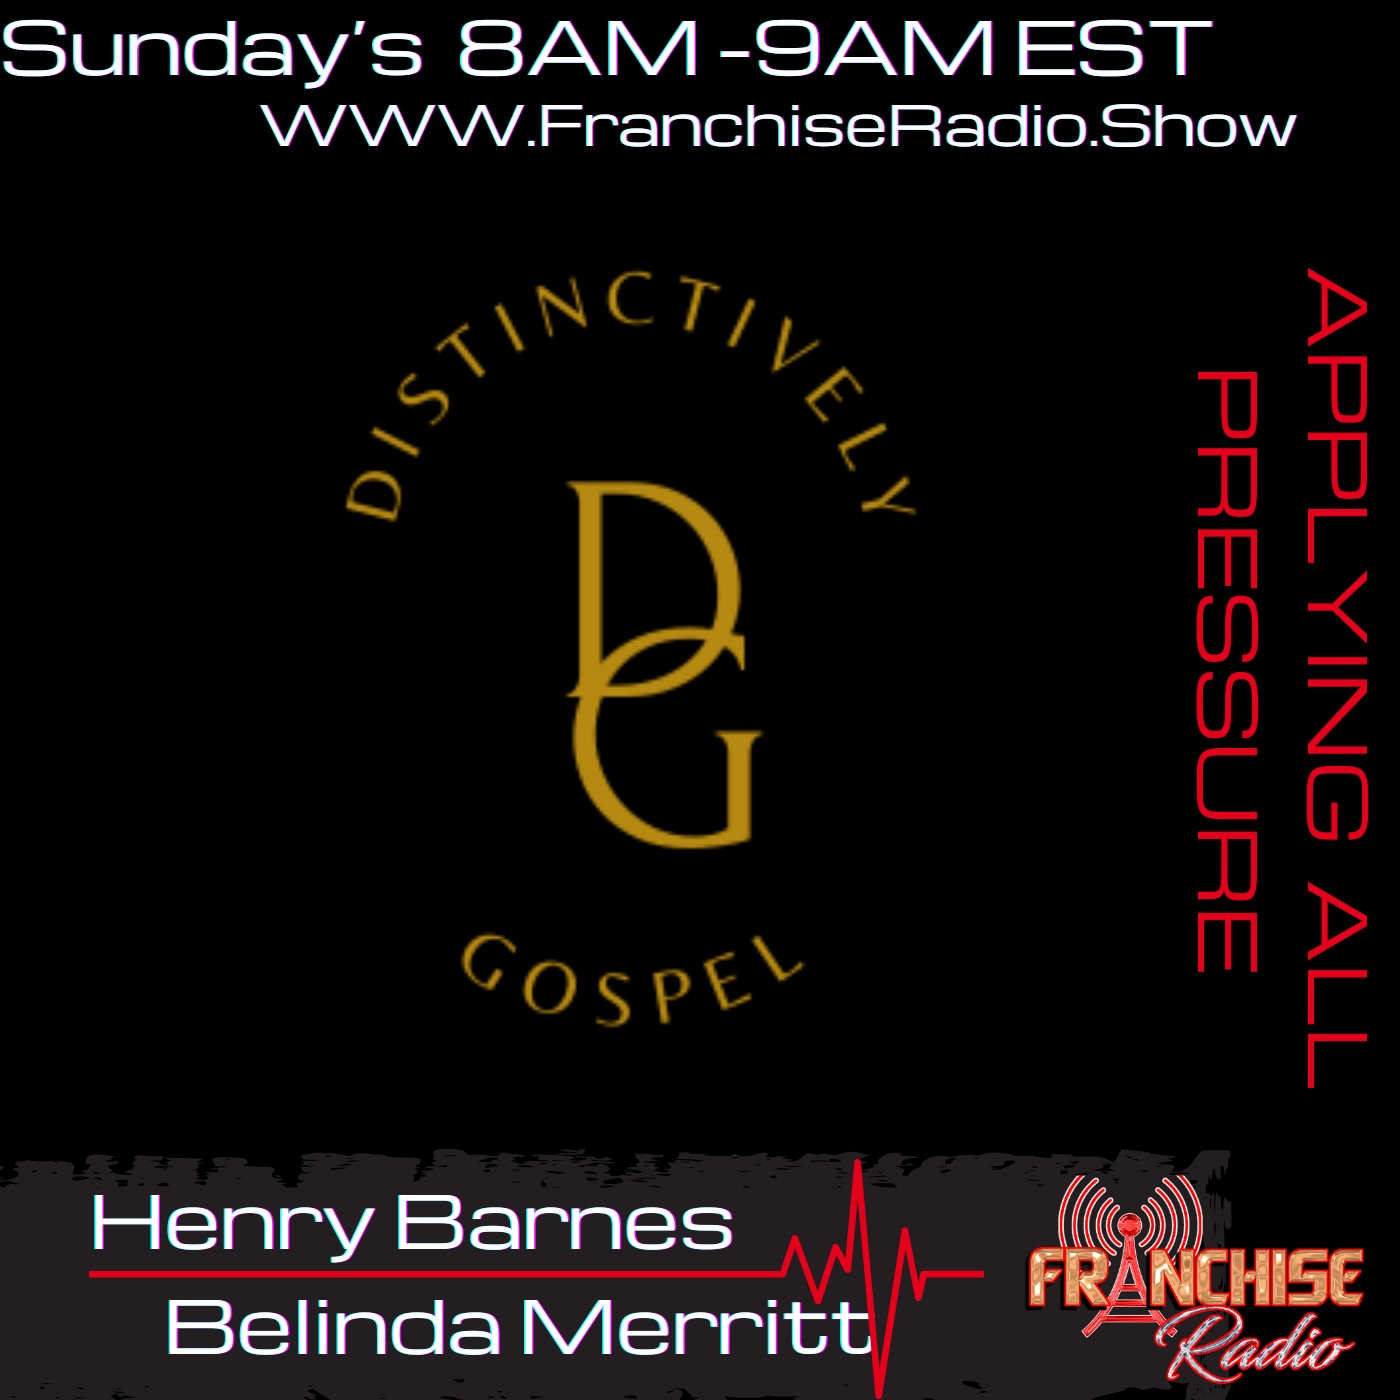 Henry Barnes and Belinda Merritt starts our Sunday Mornings